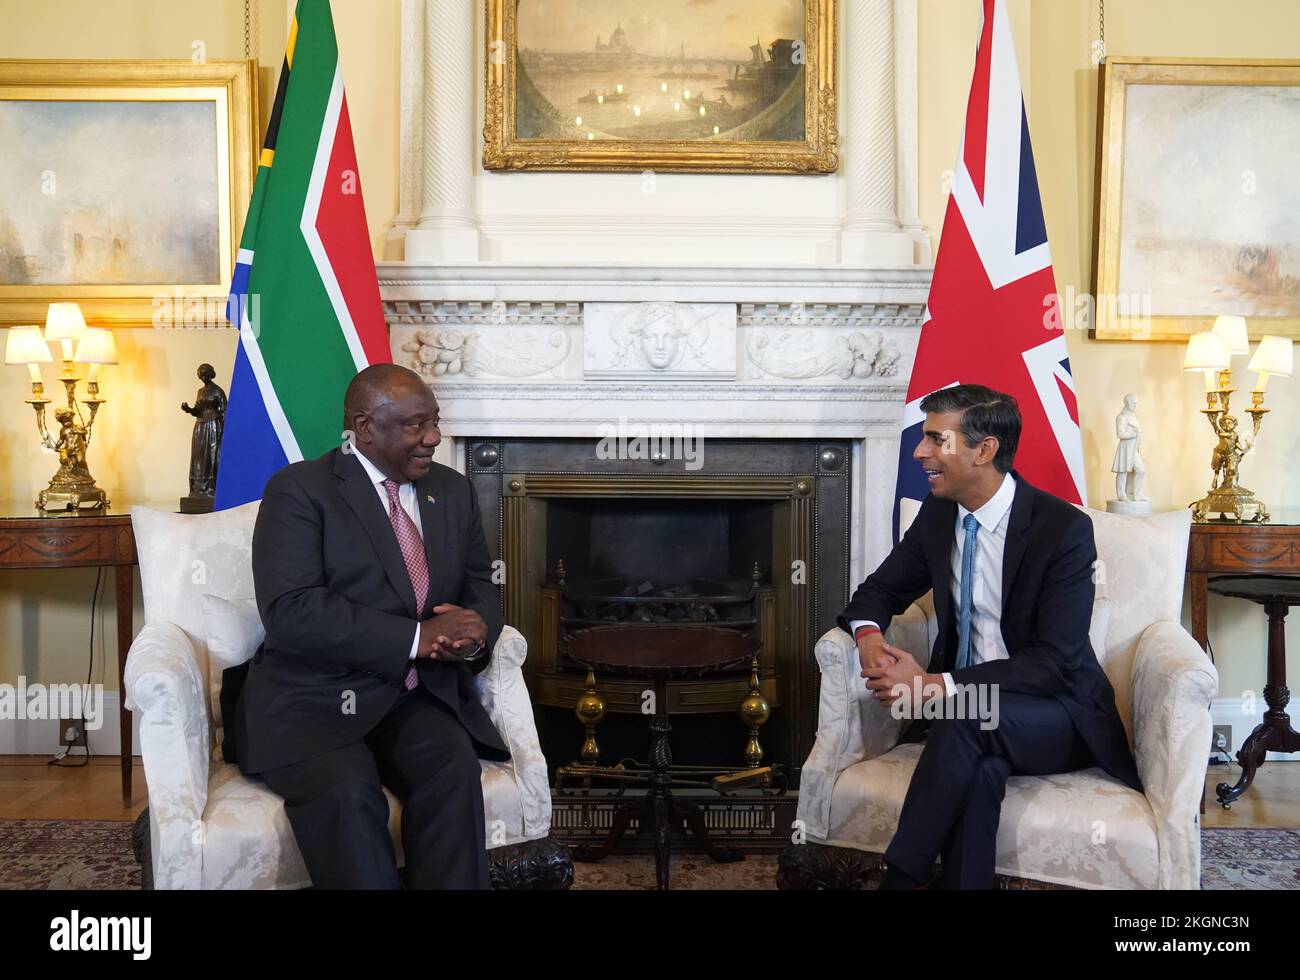 Le Premier ministre Rishi Sunak souhaite la bienvenue au président de l'Afrique du Sud, Cyril Ramaphosa, au 10 Downing Street, à Londres, avant une réunion bilatérale au cours de sa visite d'État au Royaume-Uni. Date de la photo: Mercredi 23 novembre 2022. Banque D'Images